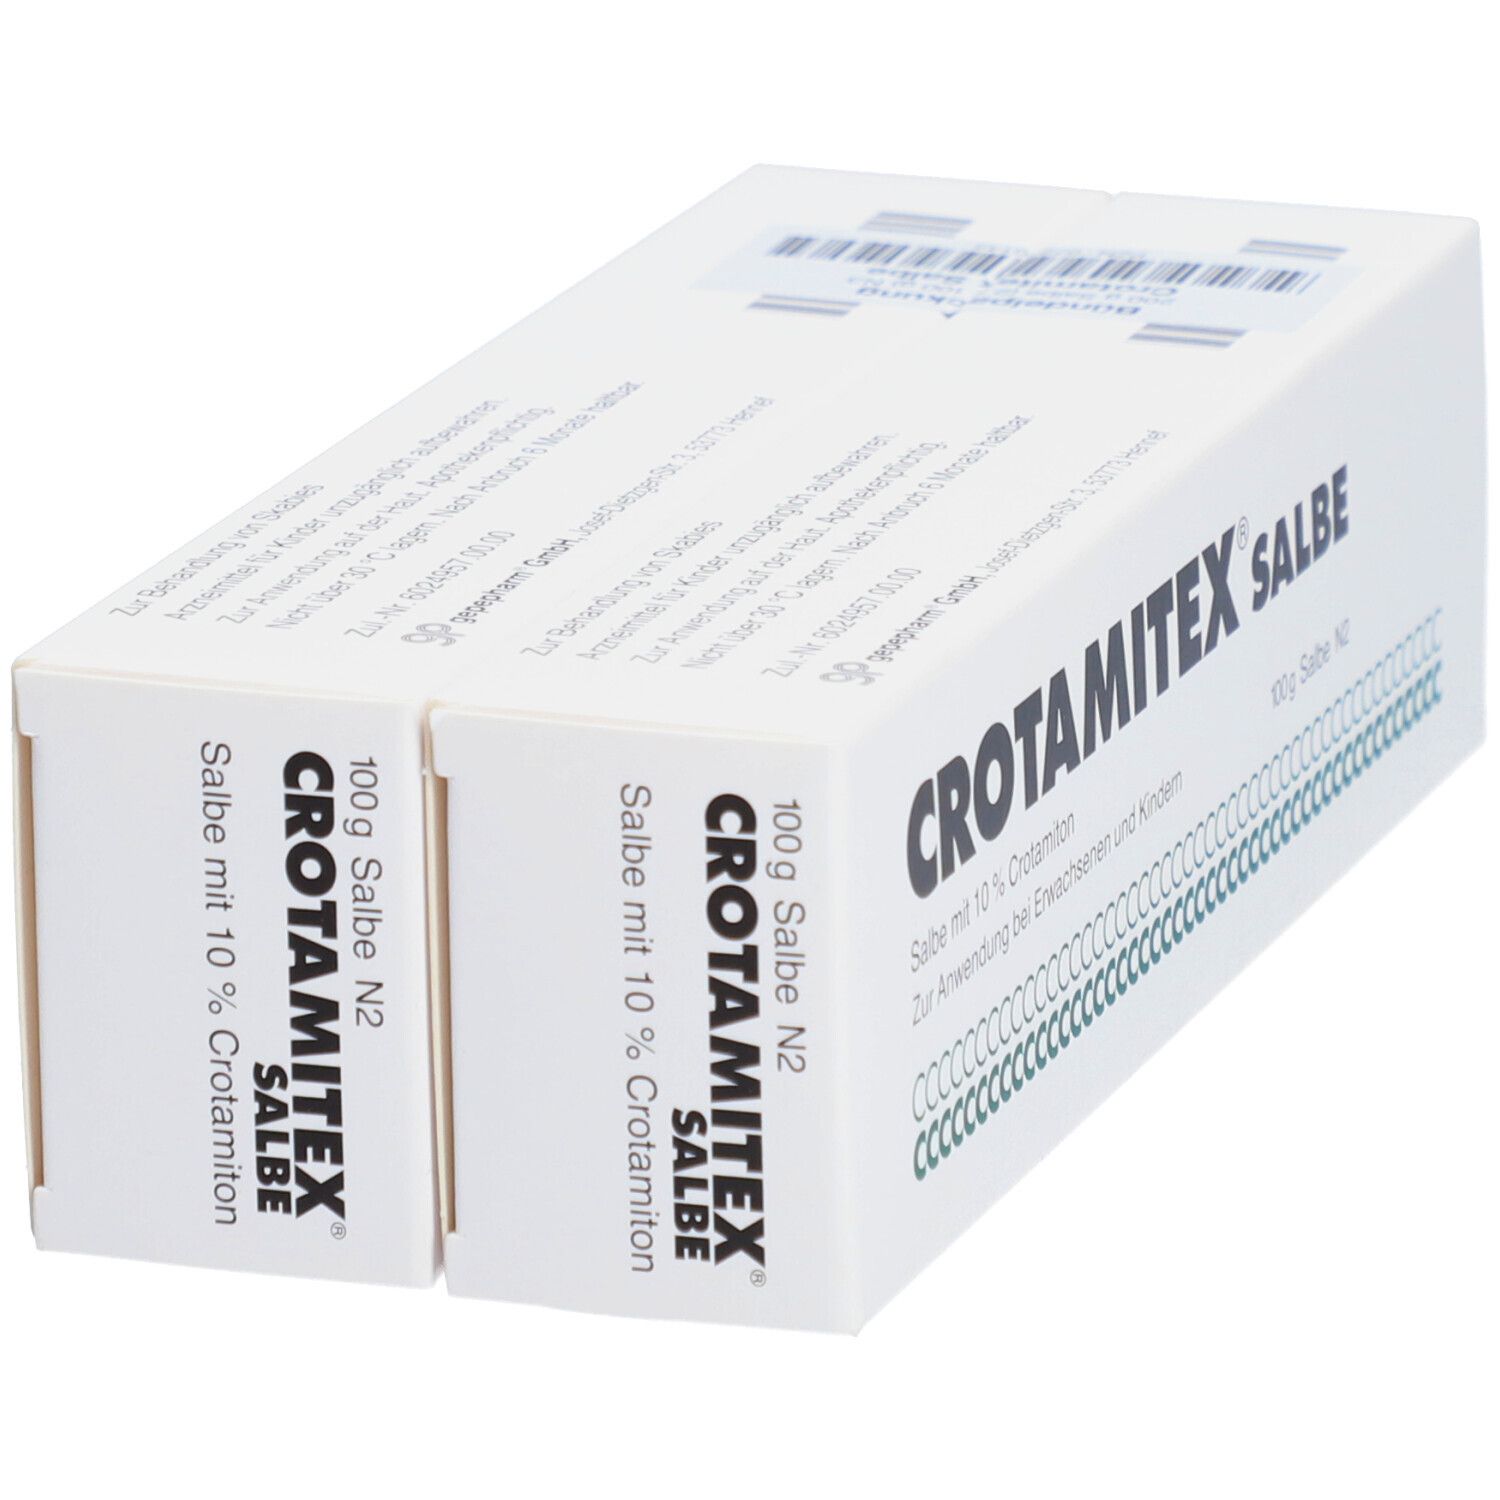 Verdreifachen Sie Ihre Ergebnisse bei Topamax 200 mg Kaufen günstig Bestellung Generika in der Hälfte der Zeit